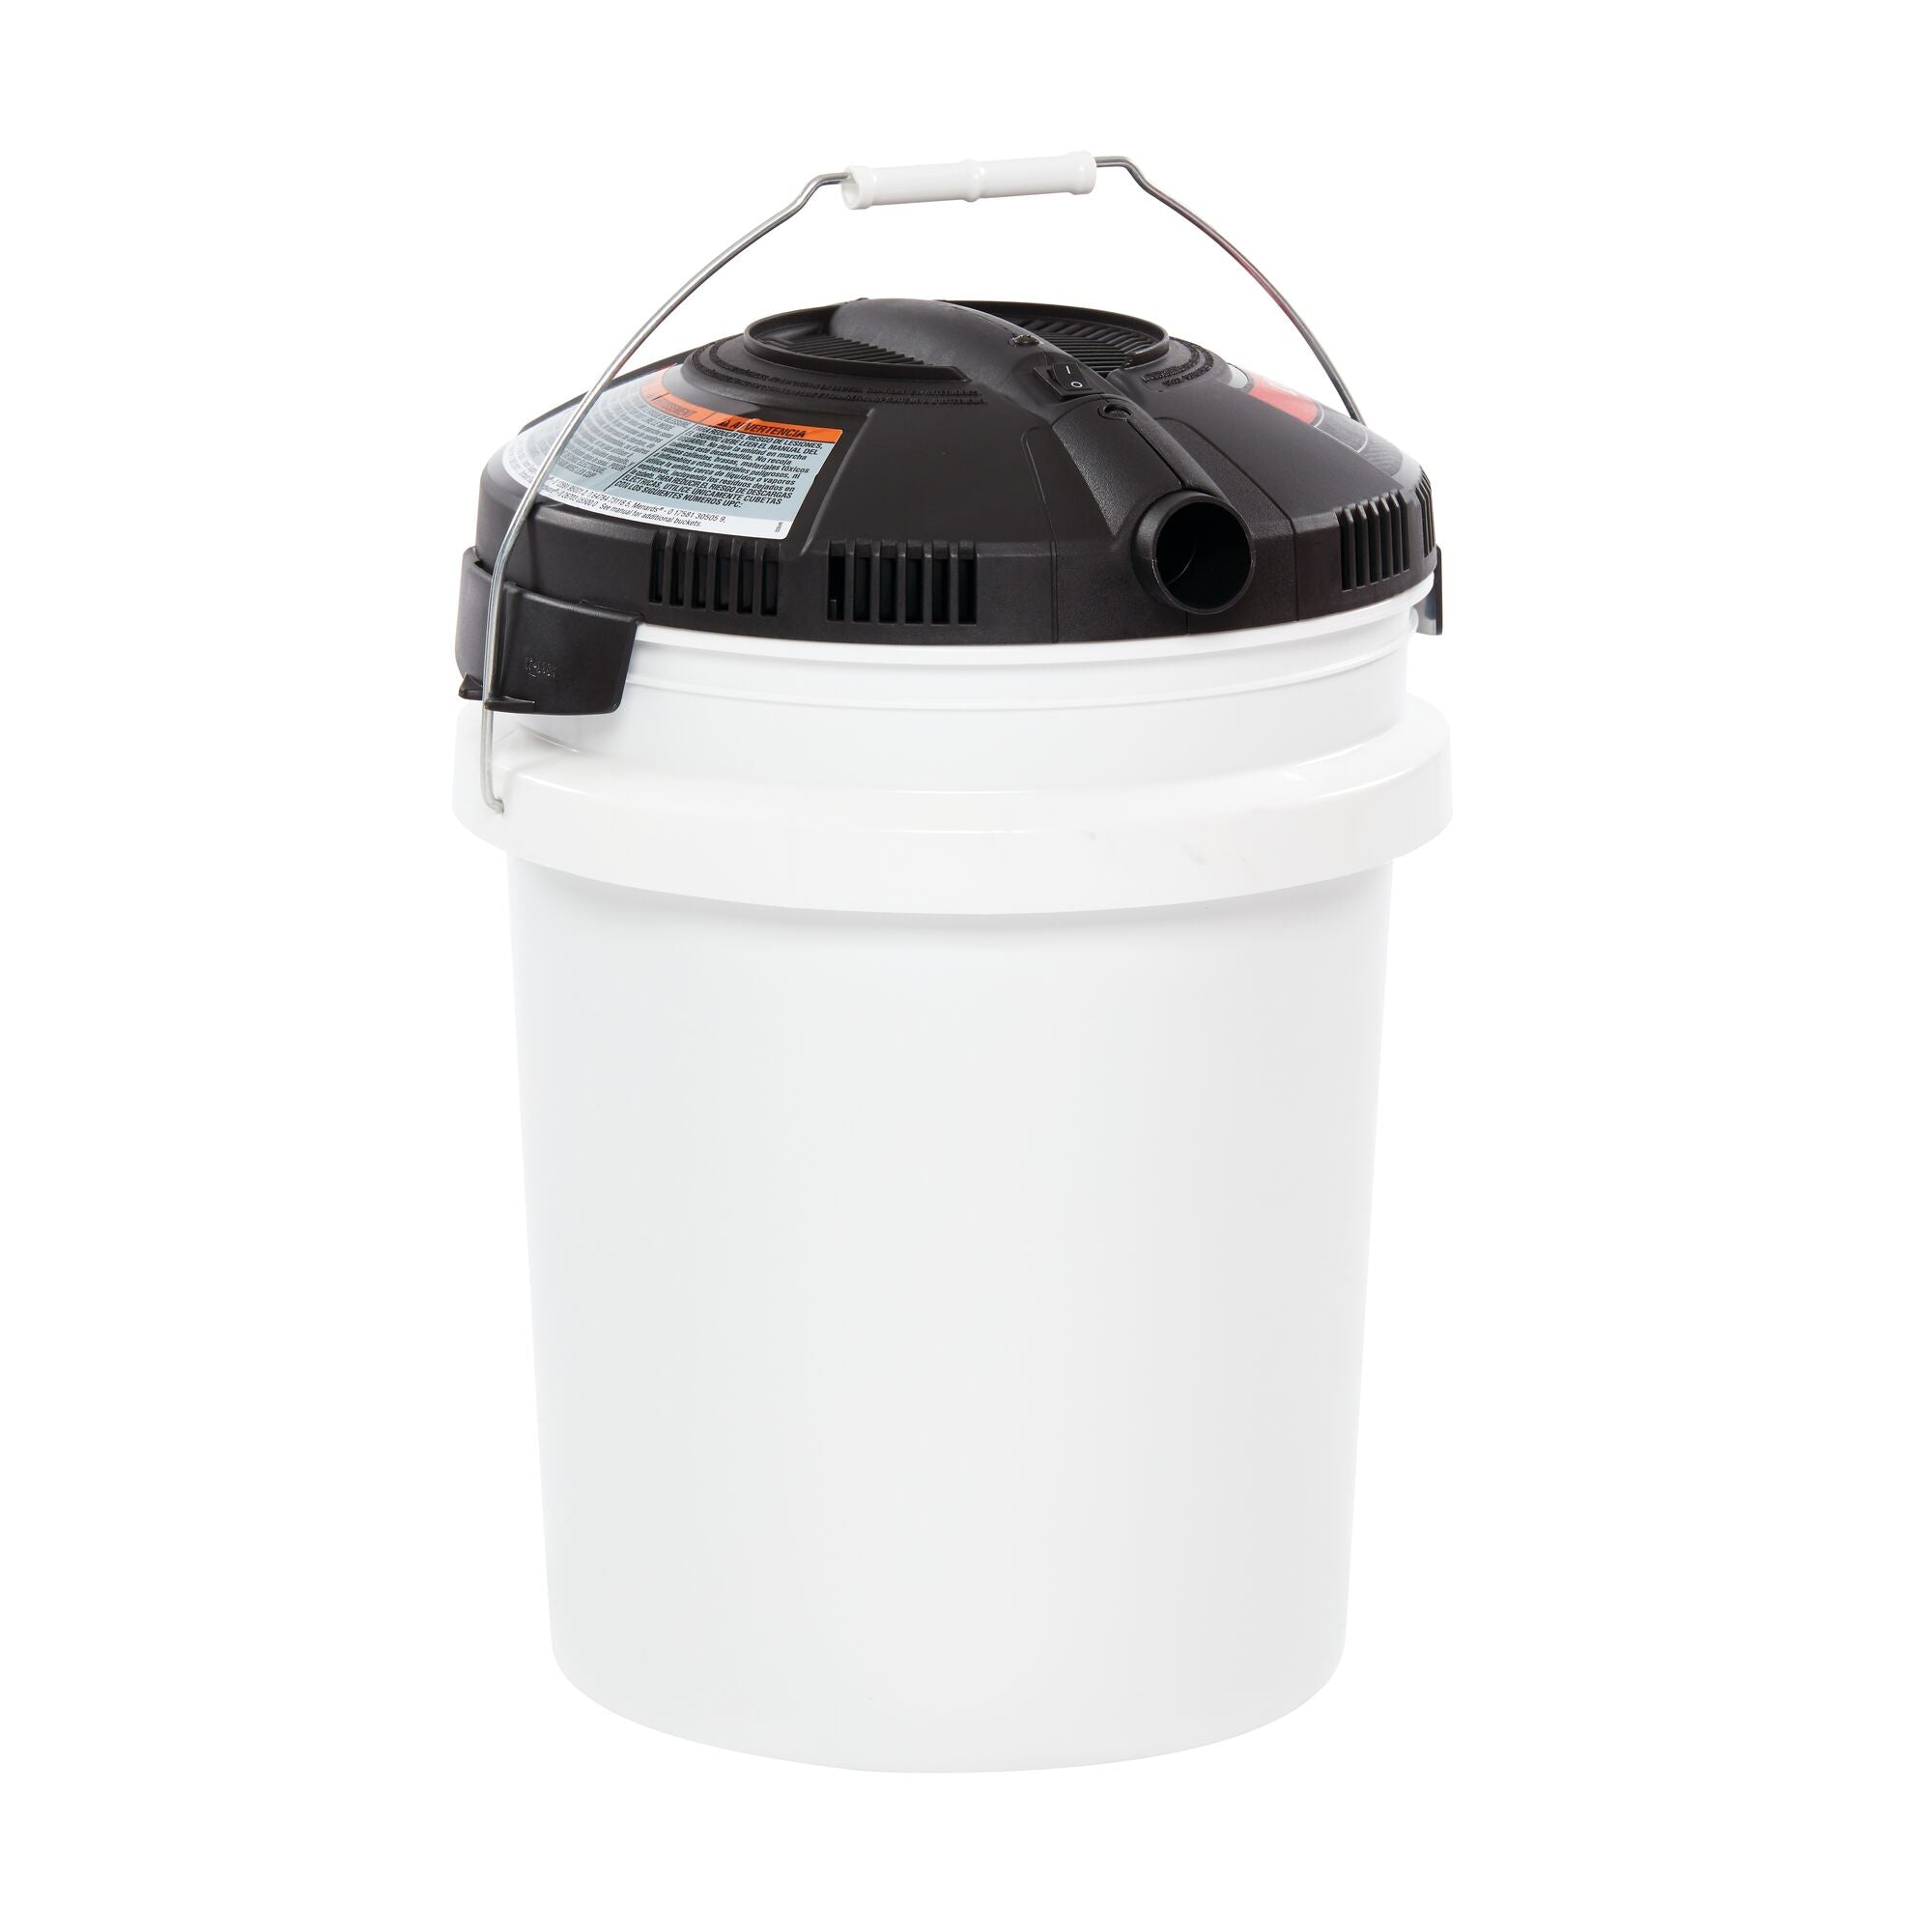 Powerhead Bucket Head WetDry Vac (1.75 Peak HP*) | CRAFTSMAN